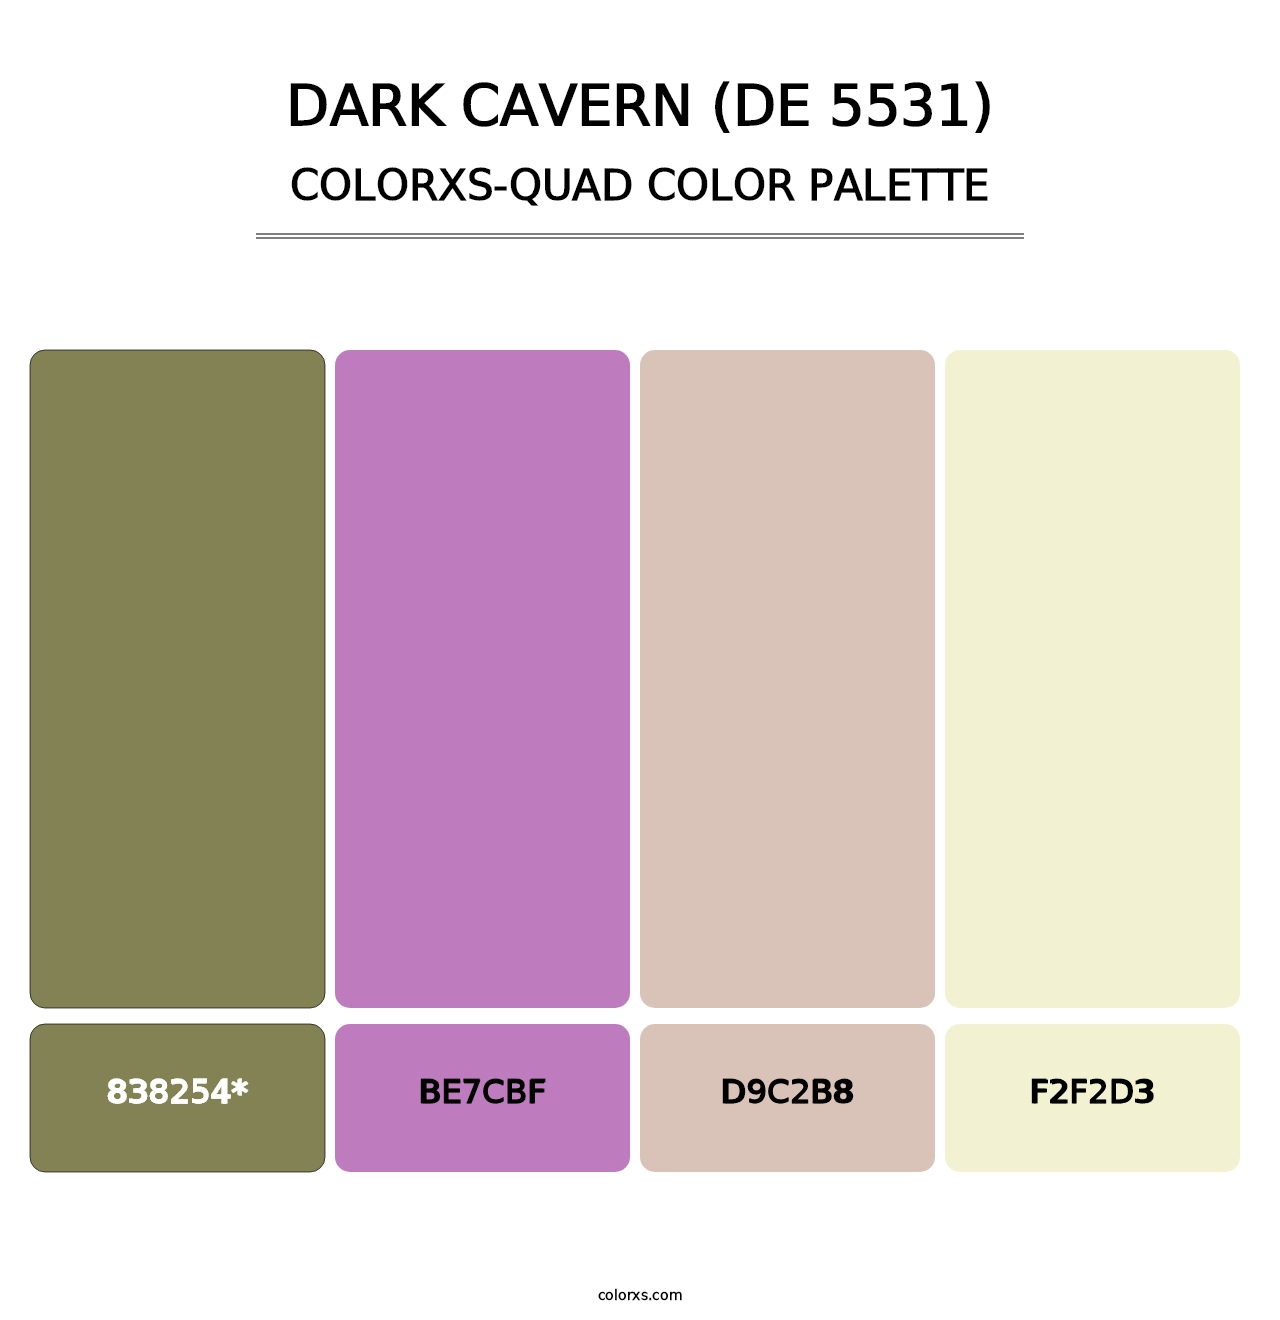 Dark Cavern (DE 5531) - Colorxs Quad Palette